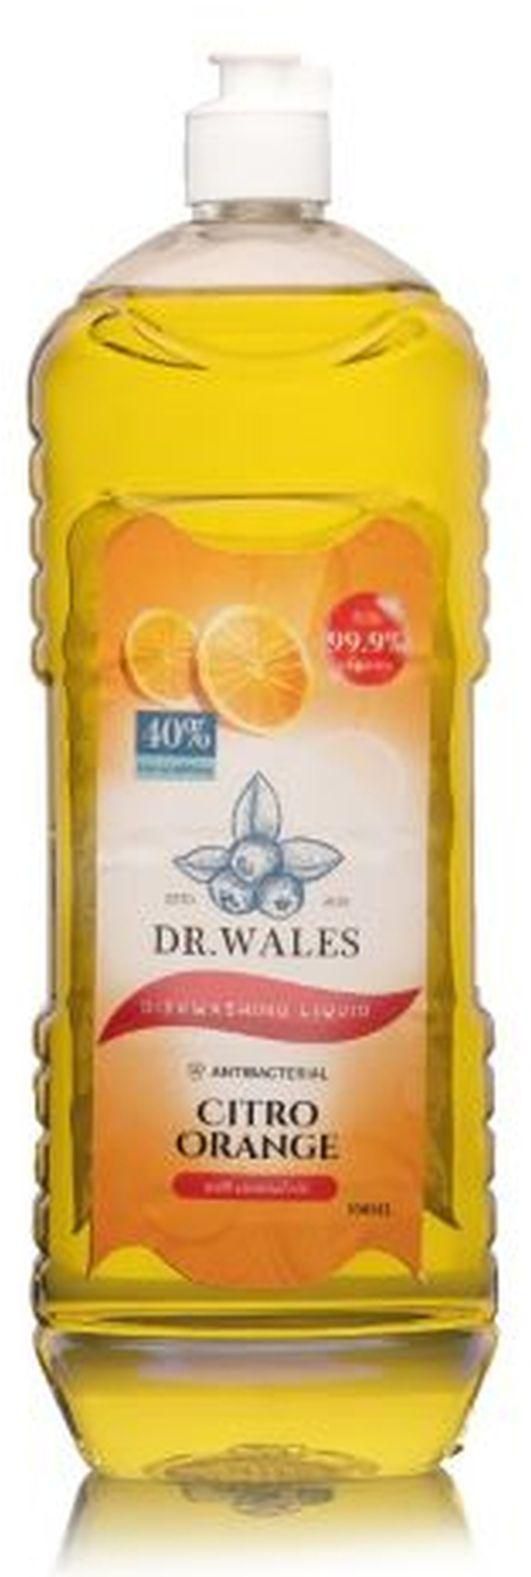 DR. WALES Dishwashing Liquid Detergent- Citro Orange 500ml